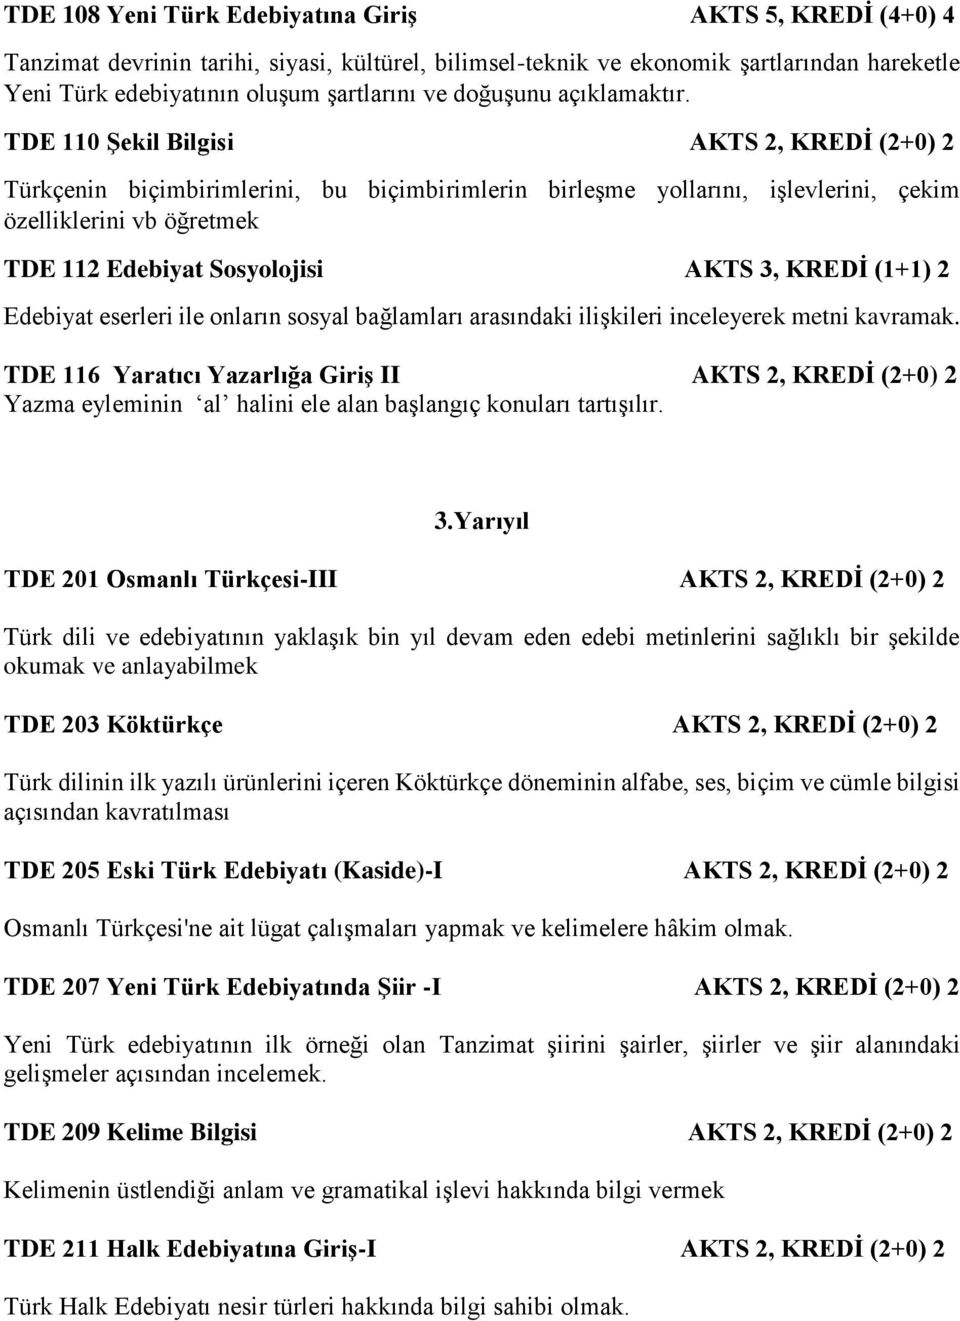 TDE 110 Şekil Bilgisi AKTS 2, KREDİ (2+0) 2 Türkçenin biçimbirimlerini, bu biçimbirimlerin birleşme yollarını, işlevlerini, çekim özelliklerini vb öğretmek TDE 112 Edebiyat Sosyolojisi AKTS 3, KREDİ